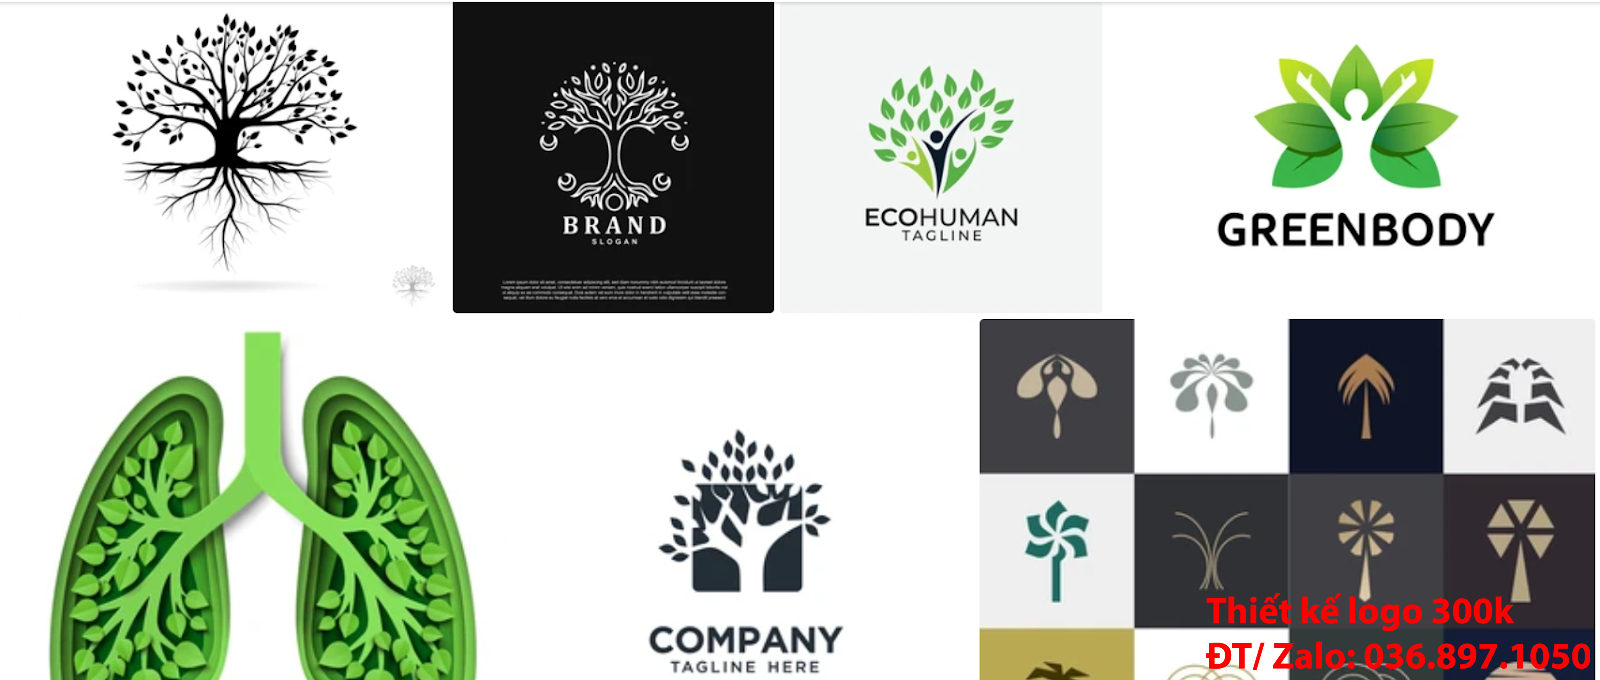 Nhận làm Mẫu logo cây xanh đơn giản tinh tế online chất lượng với giá rẻ từ 300k tại Hà Nội